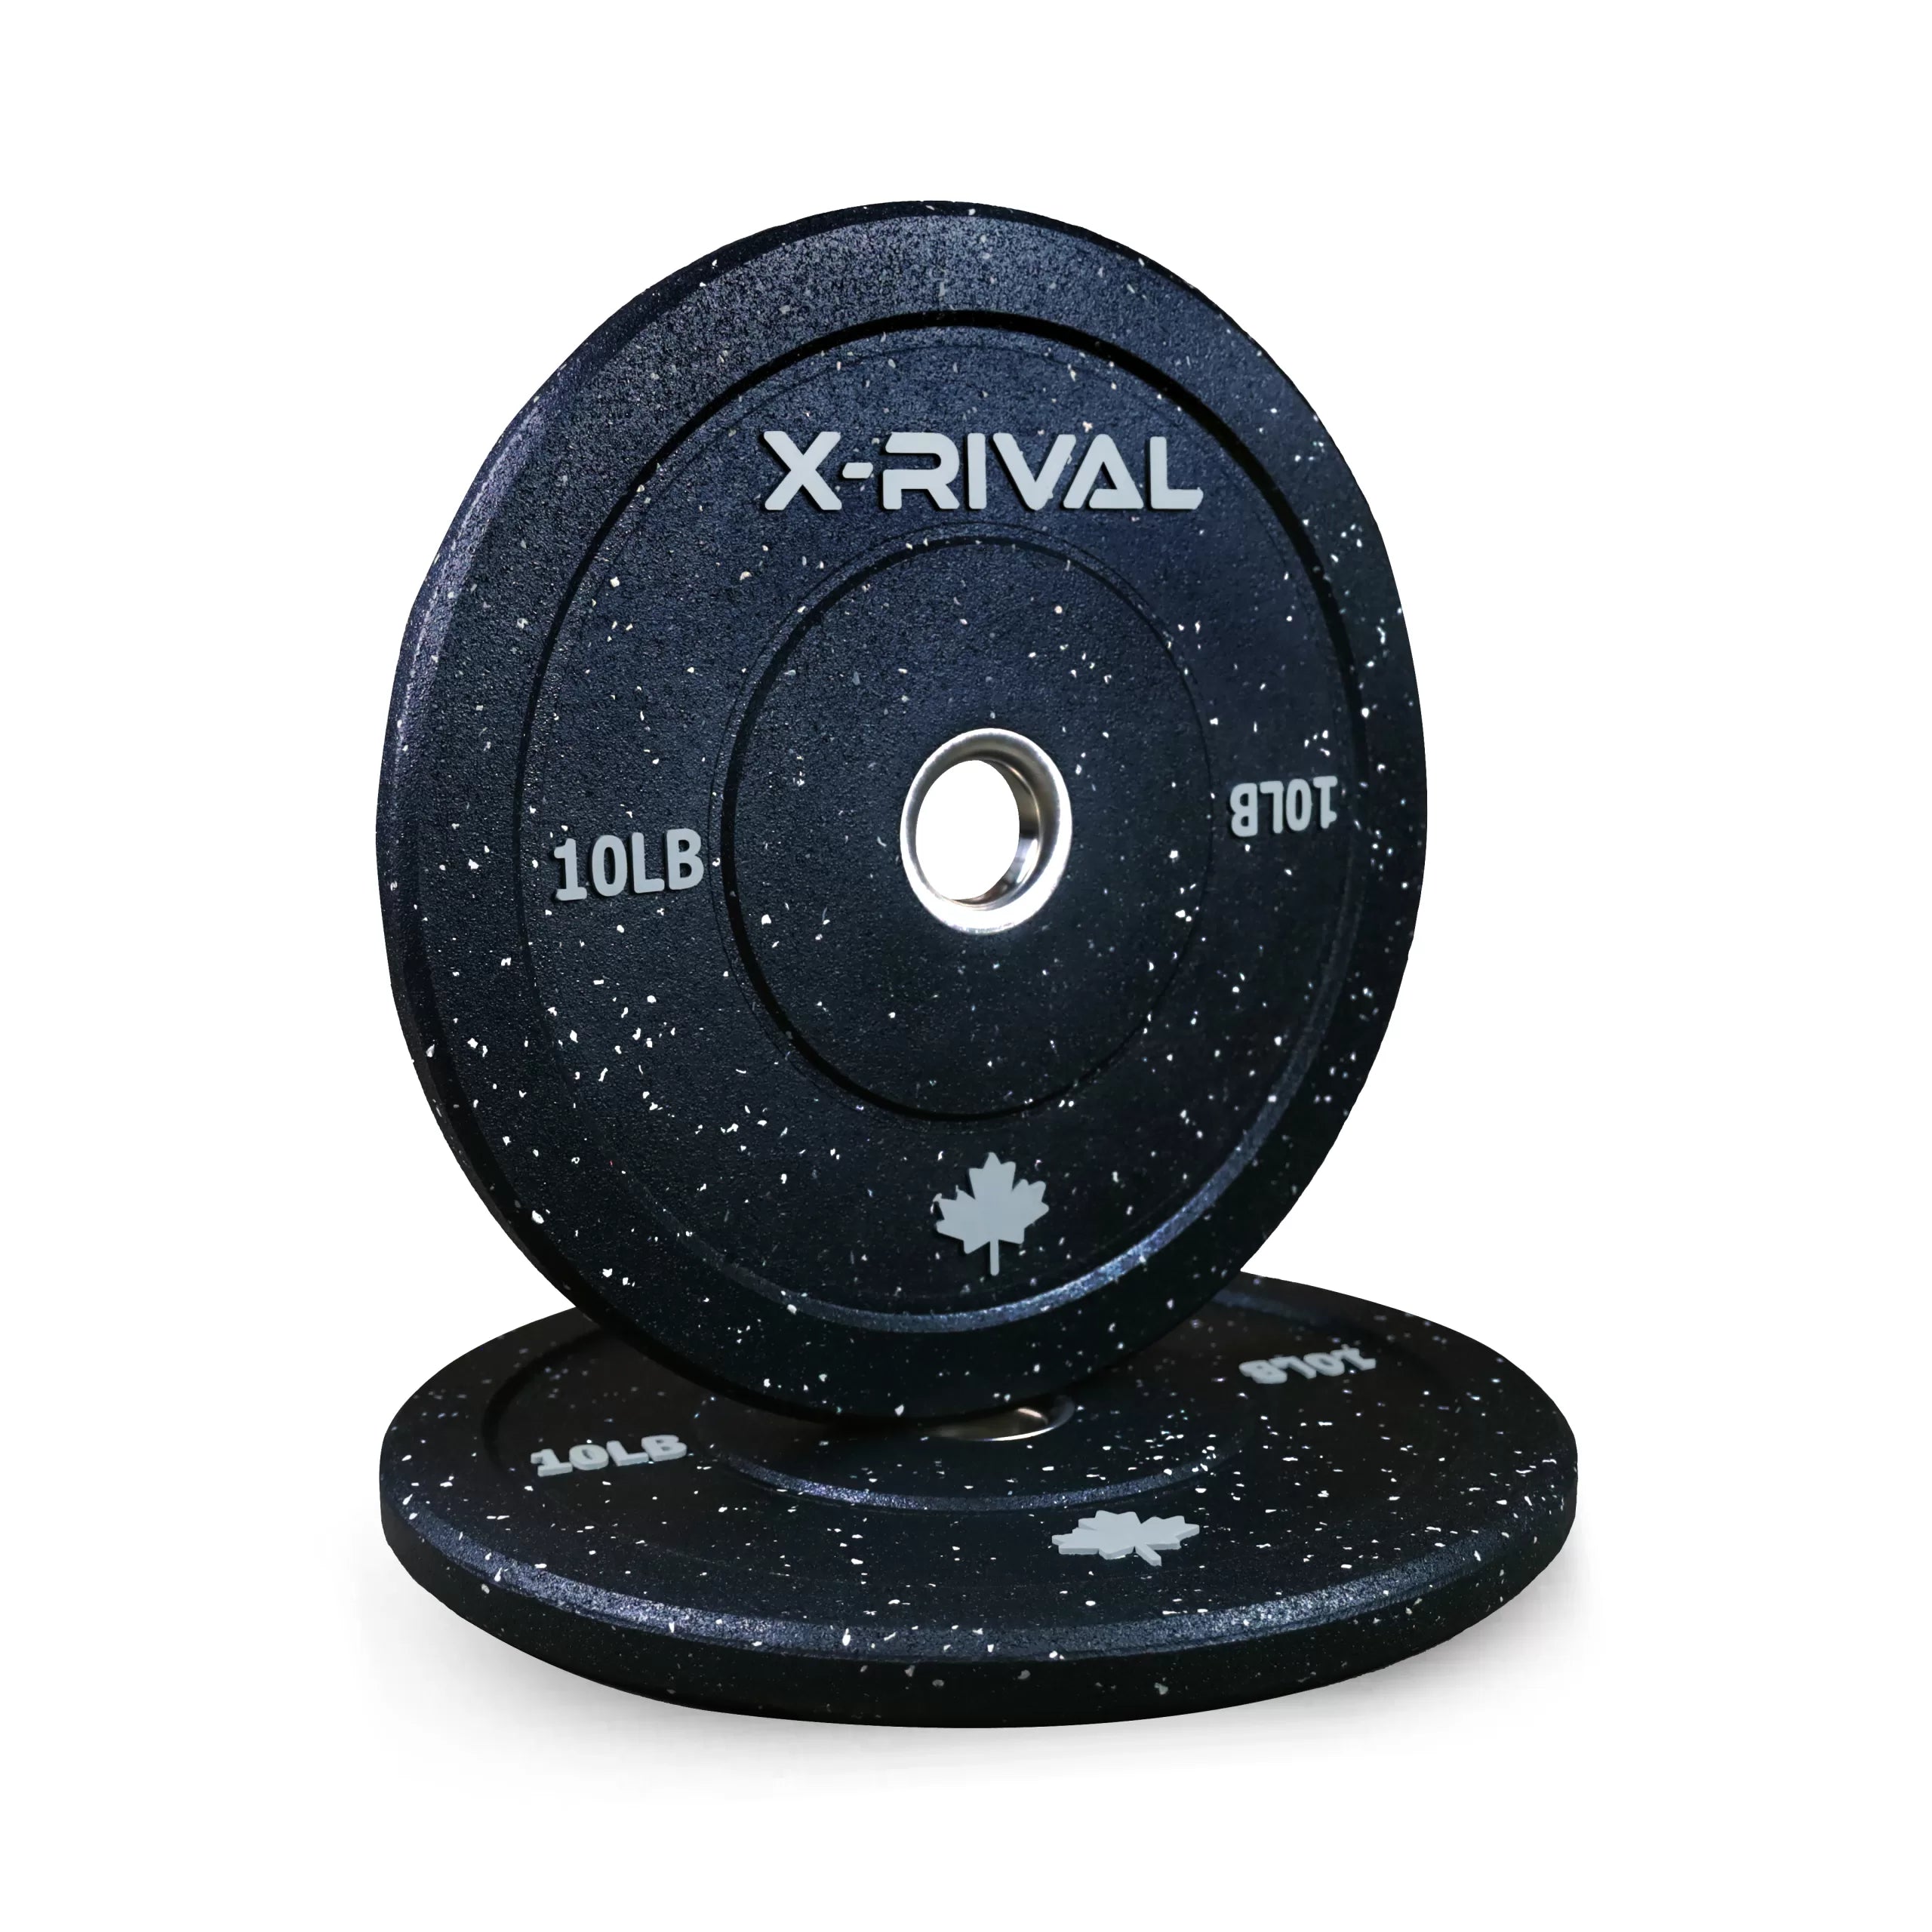 X-RIVAL Crumb Bumper Plates (Pair)